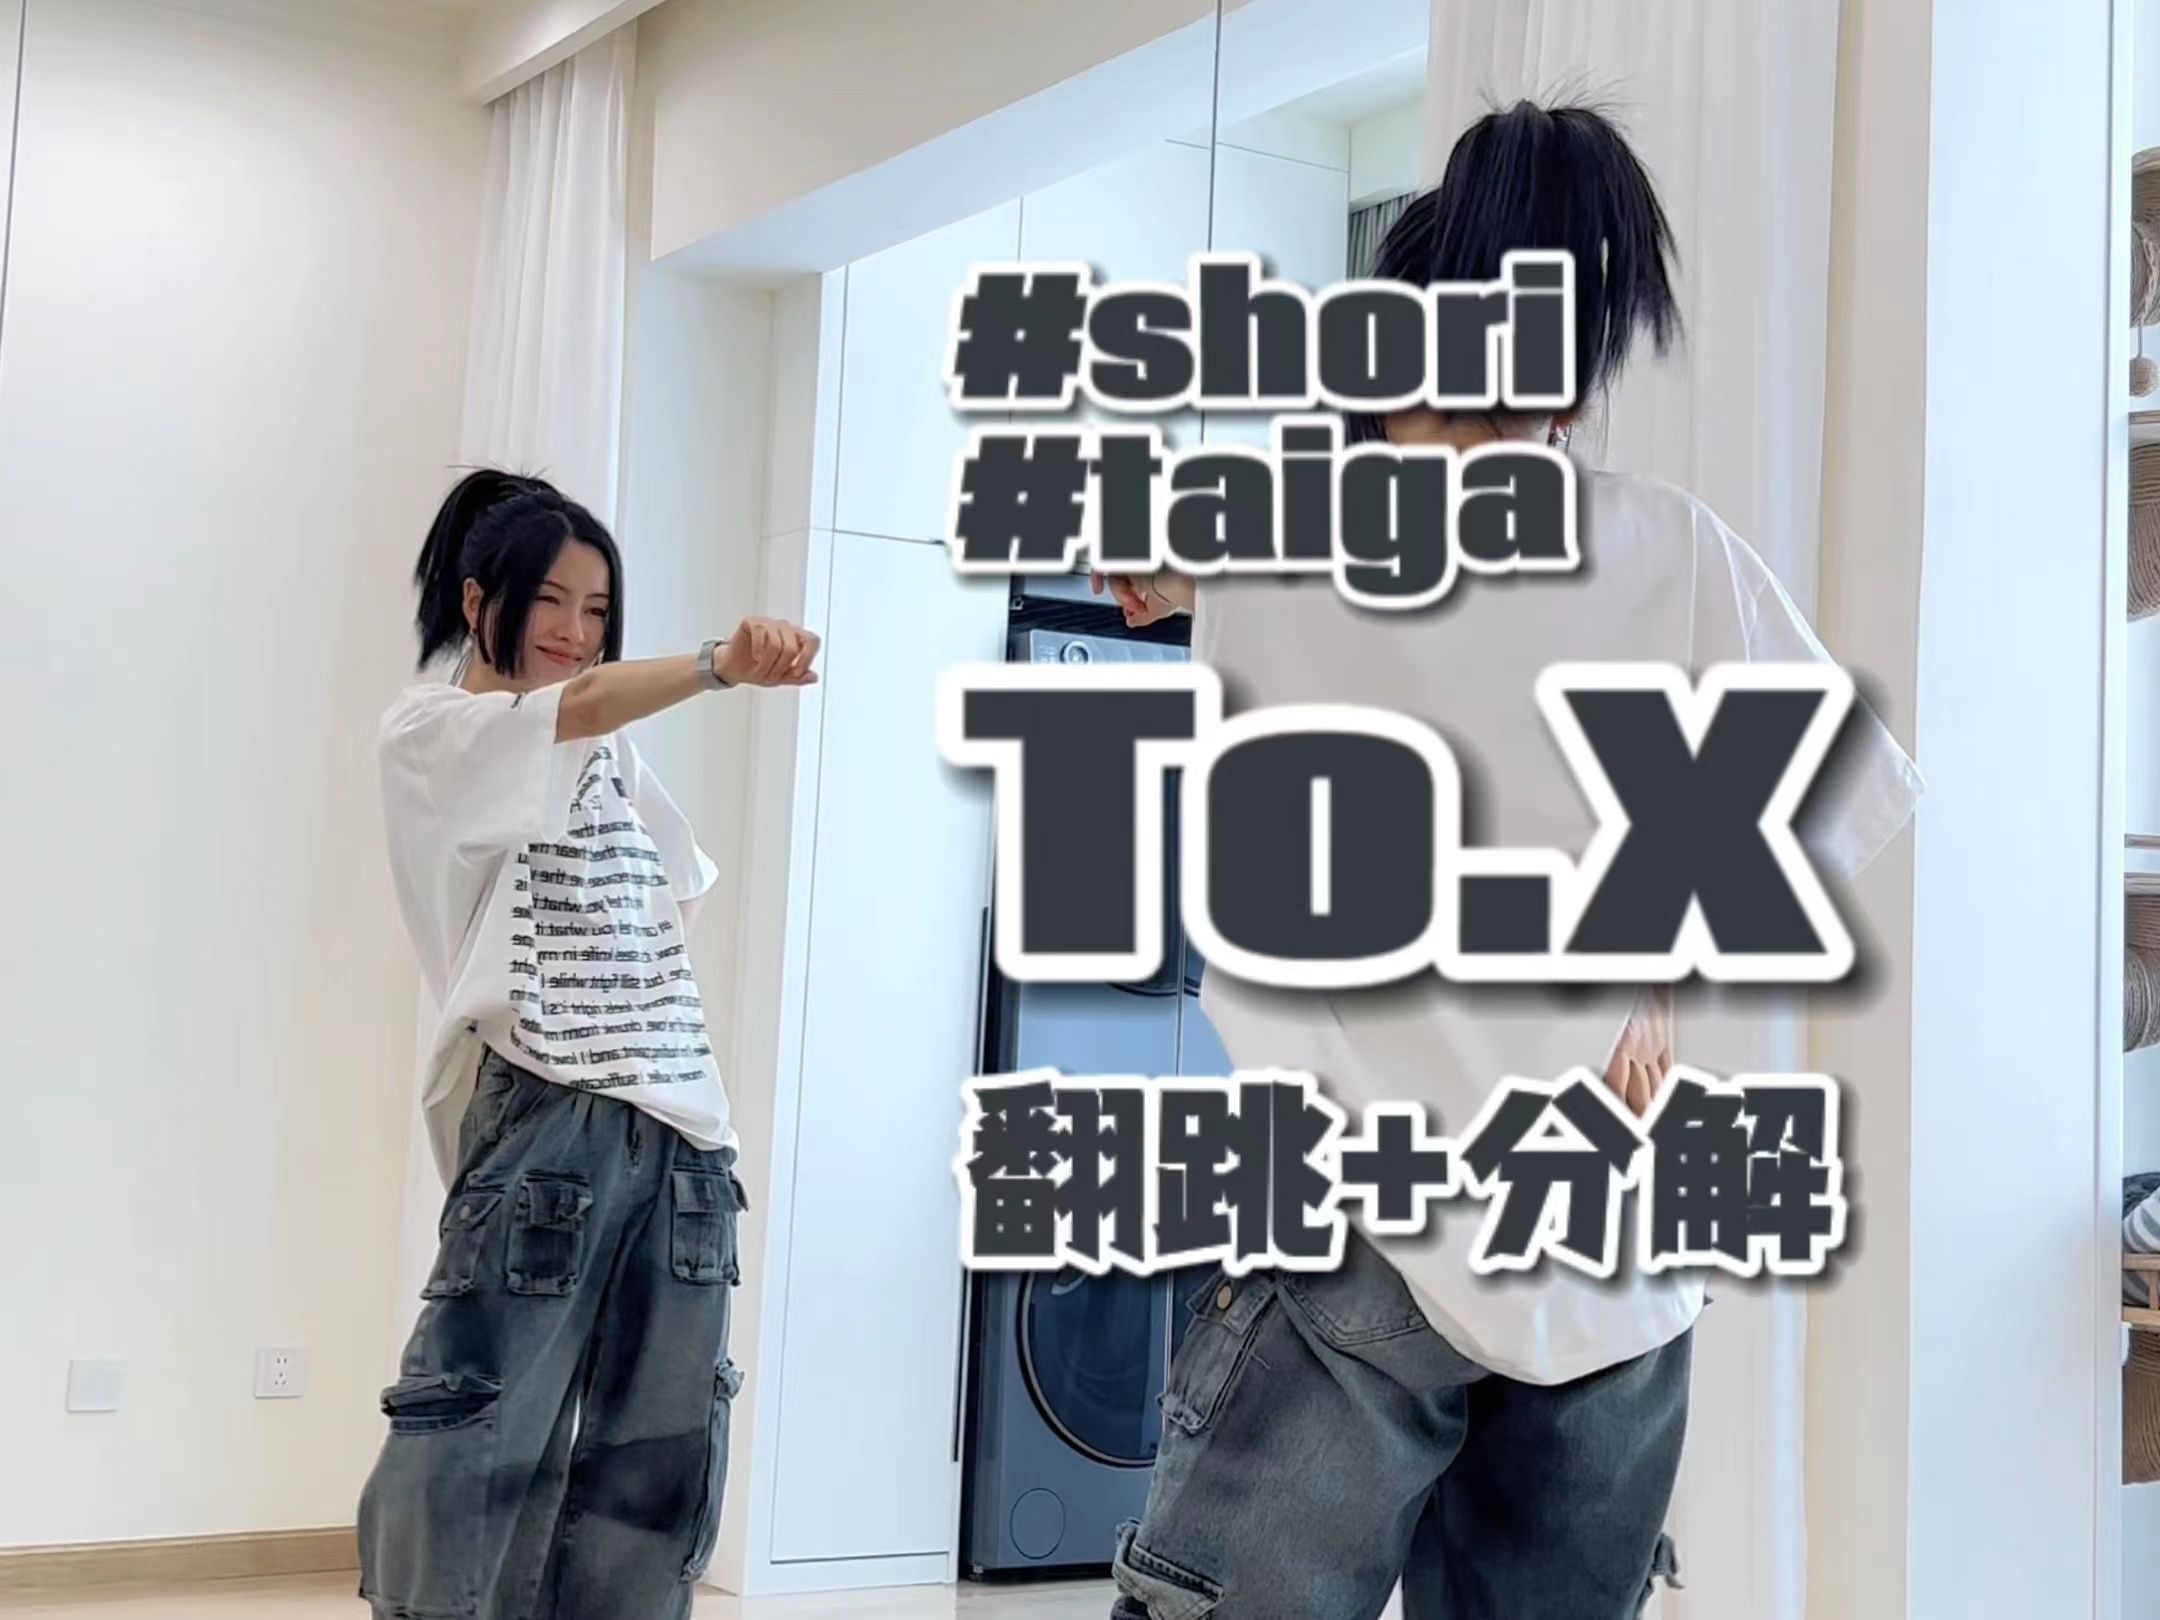 金泰妍《To.X》编舞翻跳+0.5慢速数拍分解教学 | 好爱这首~#shori #taiga